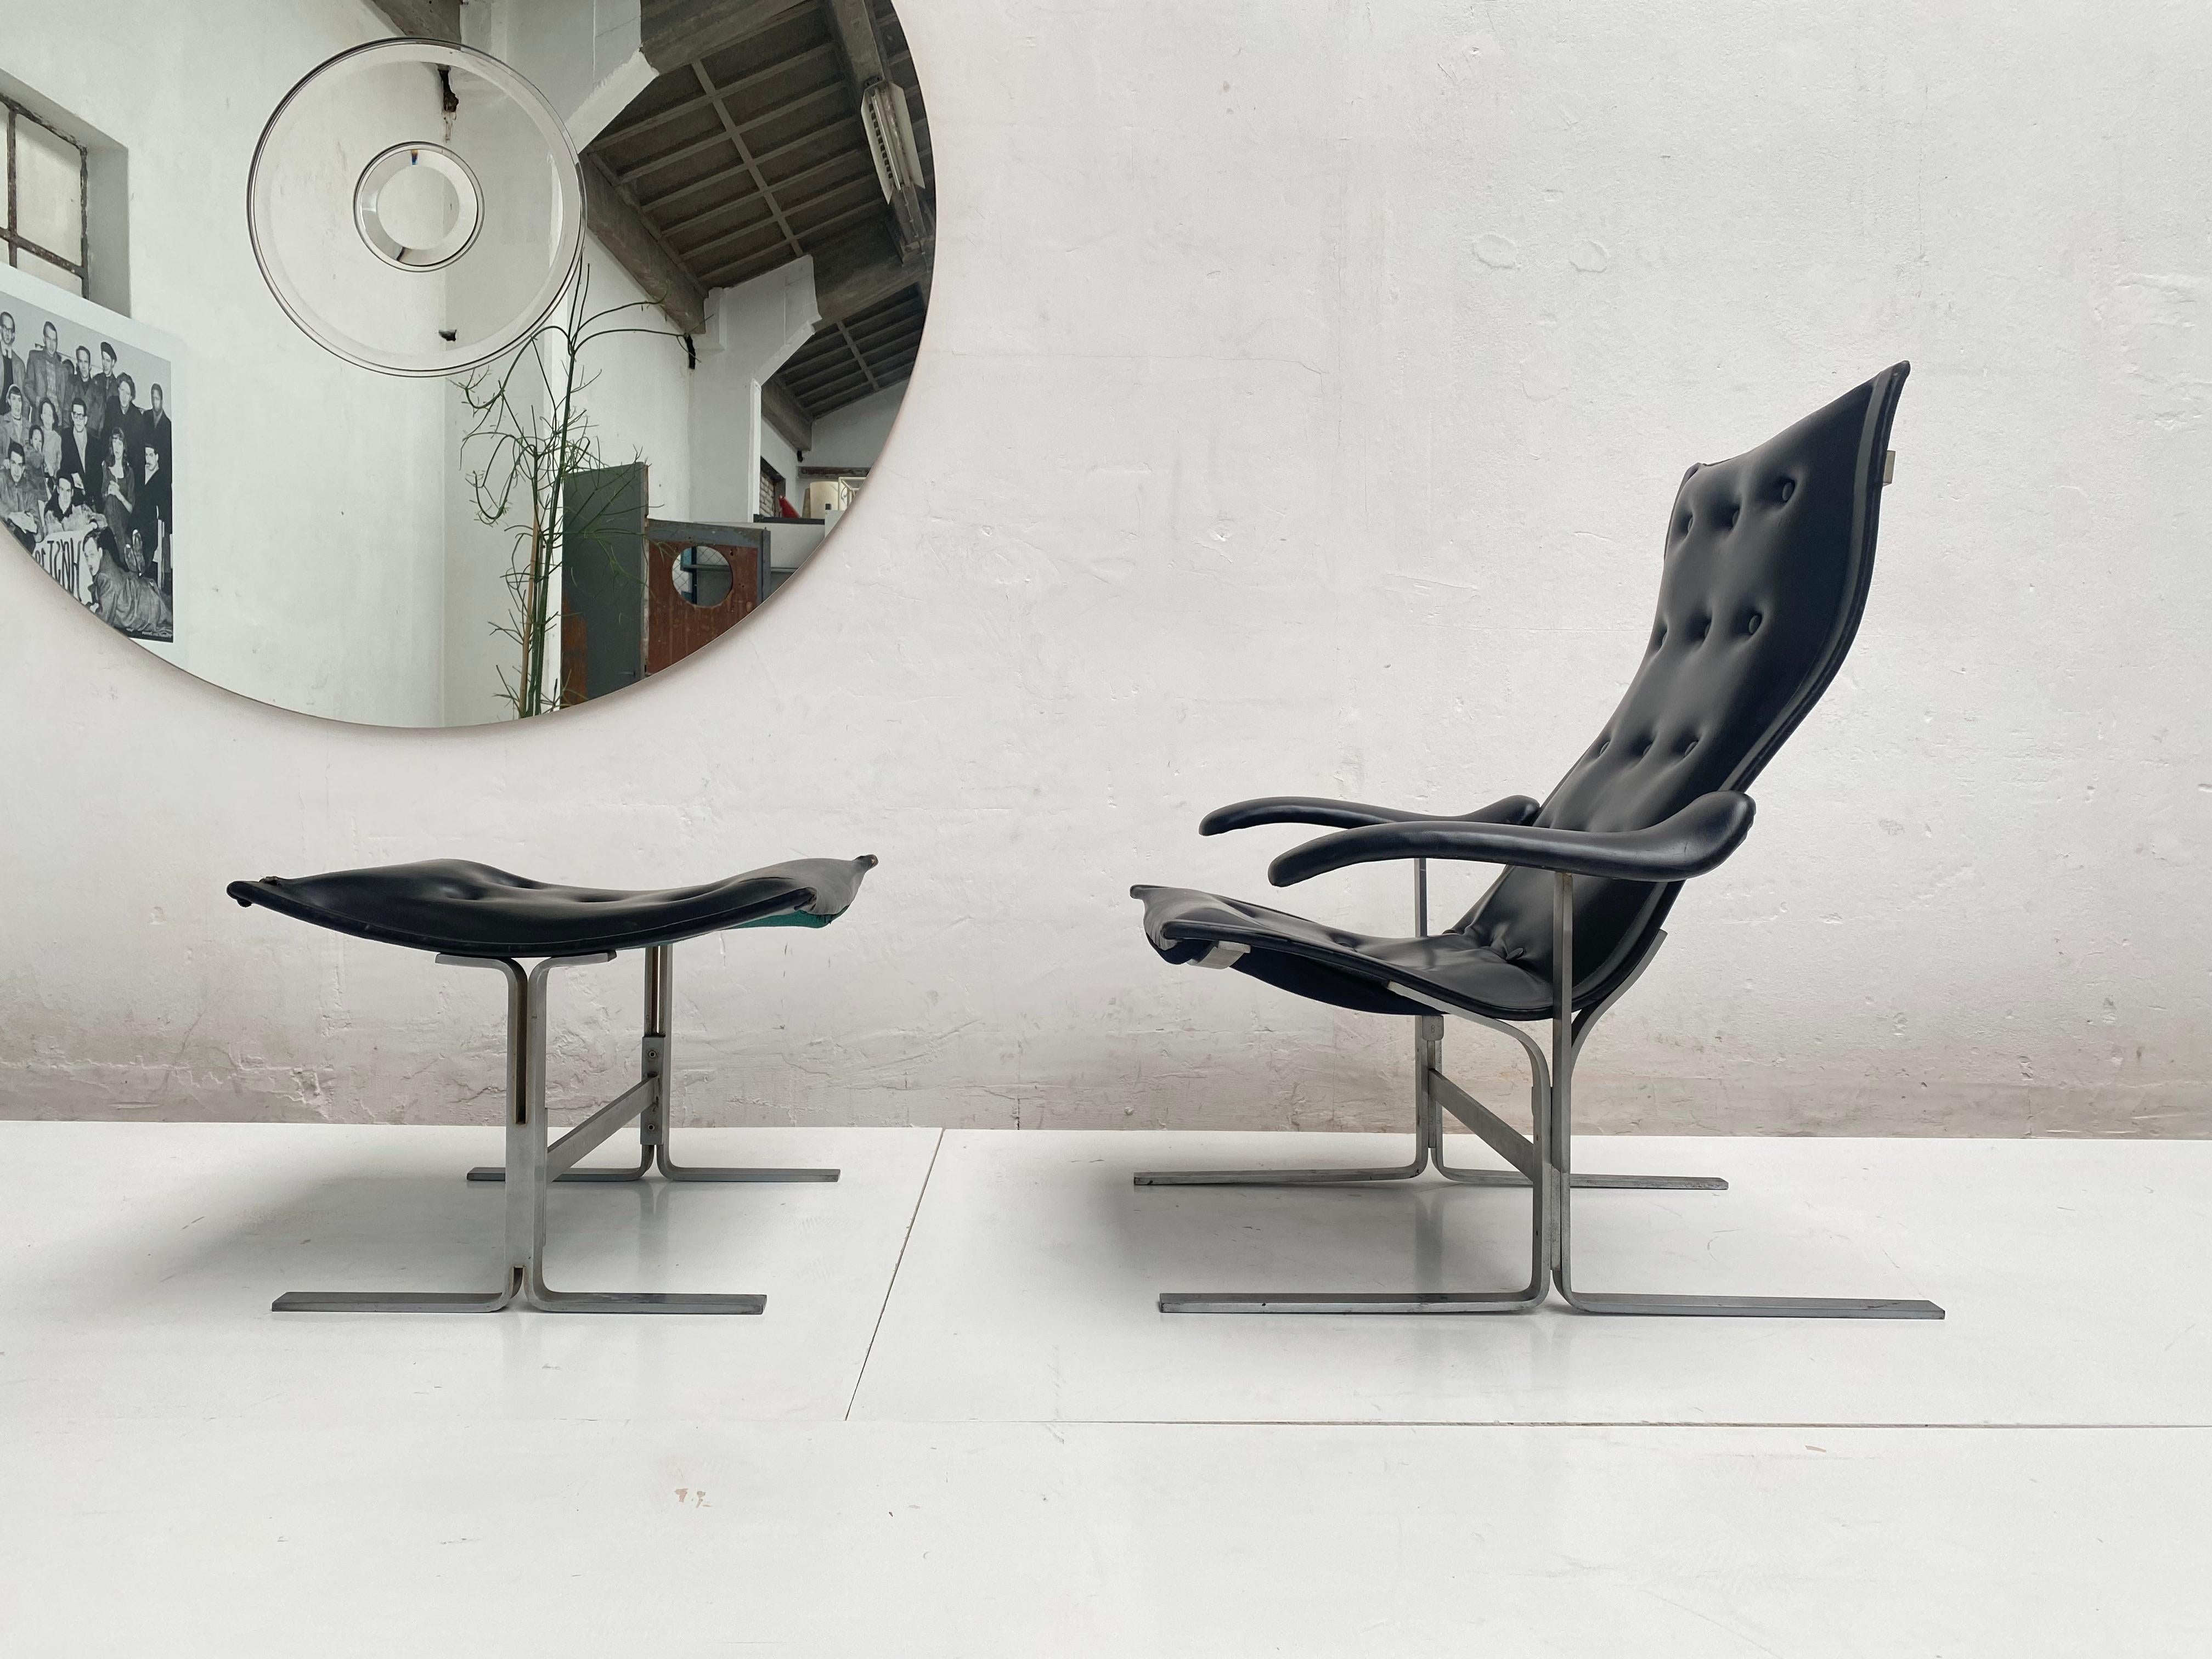 Mid-Century Modern Chaise longue et pouf Franco Campo, 1 des 2 ensembles jamais produits, authentifié en vente